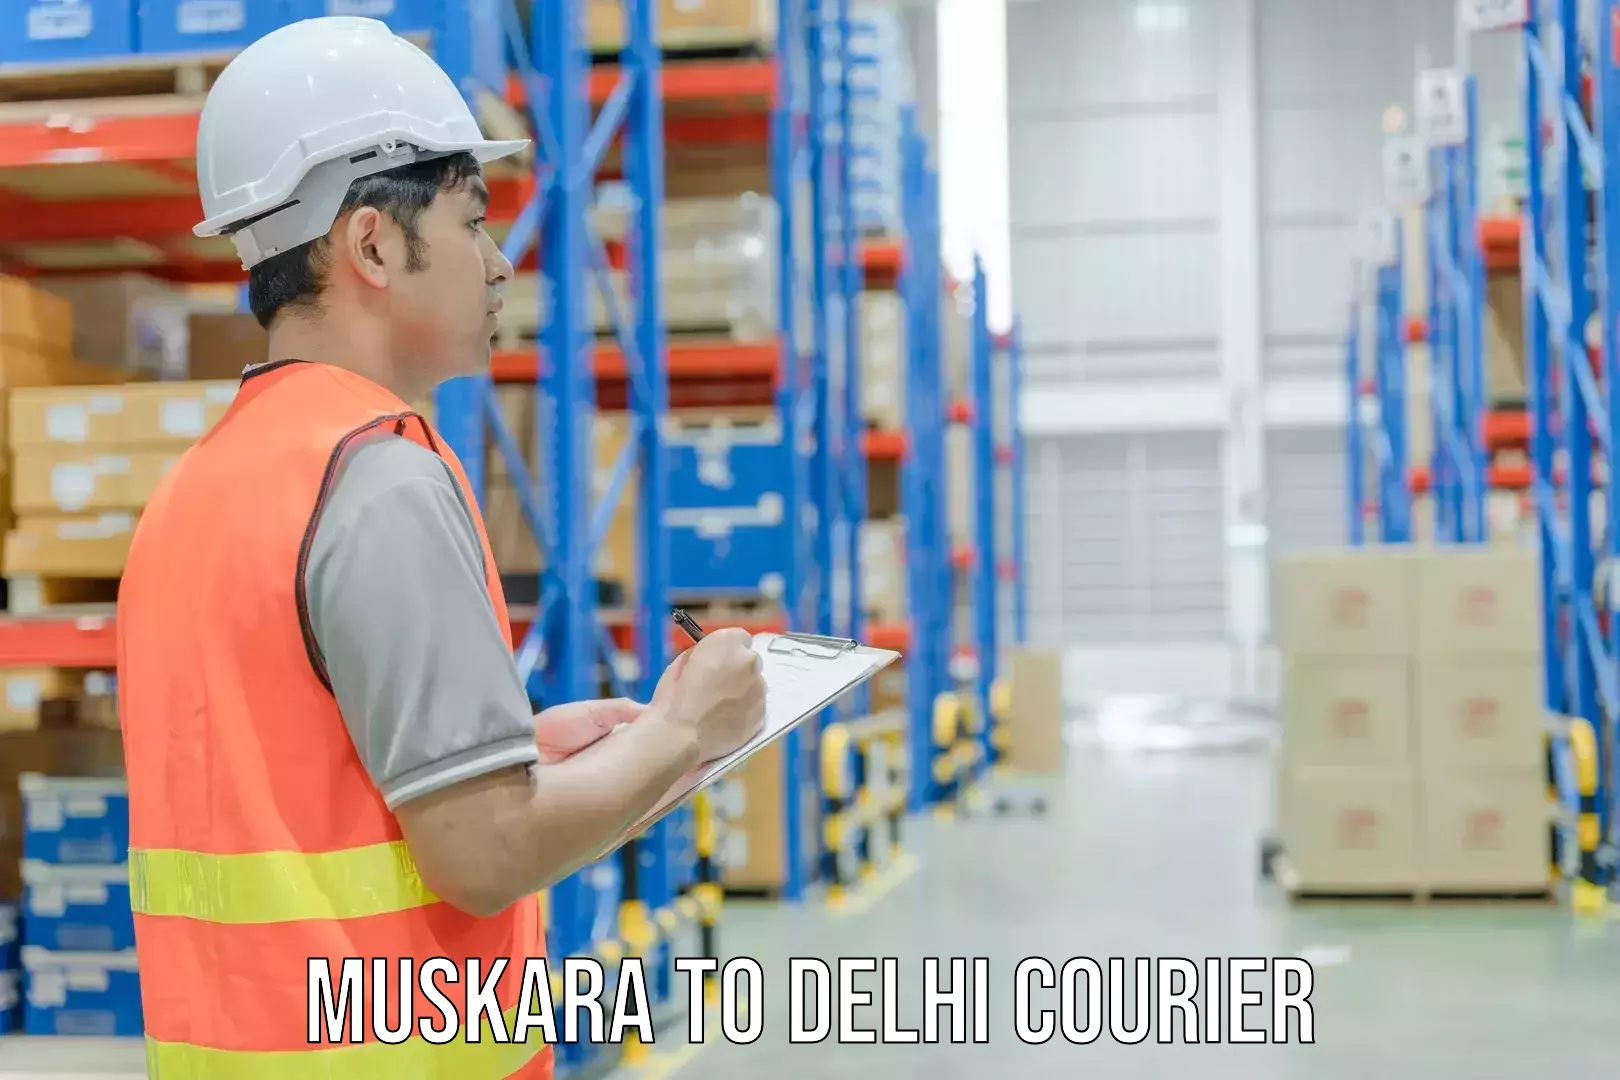 Track and trace shipping Muskara to NIT Delhi